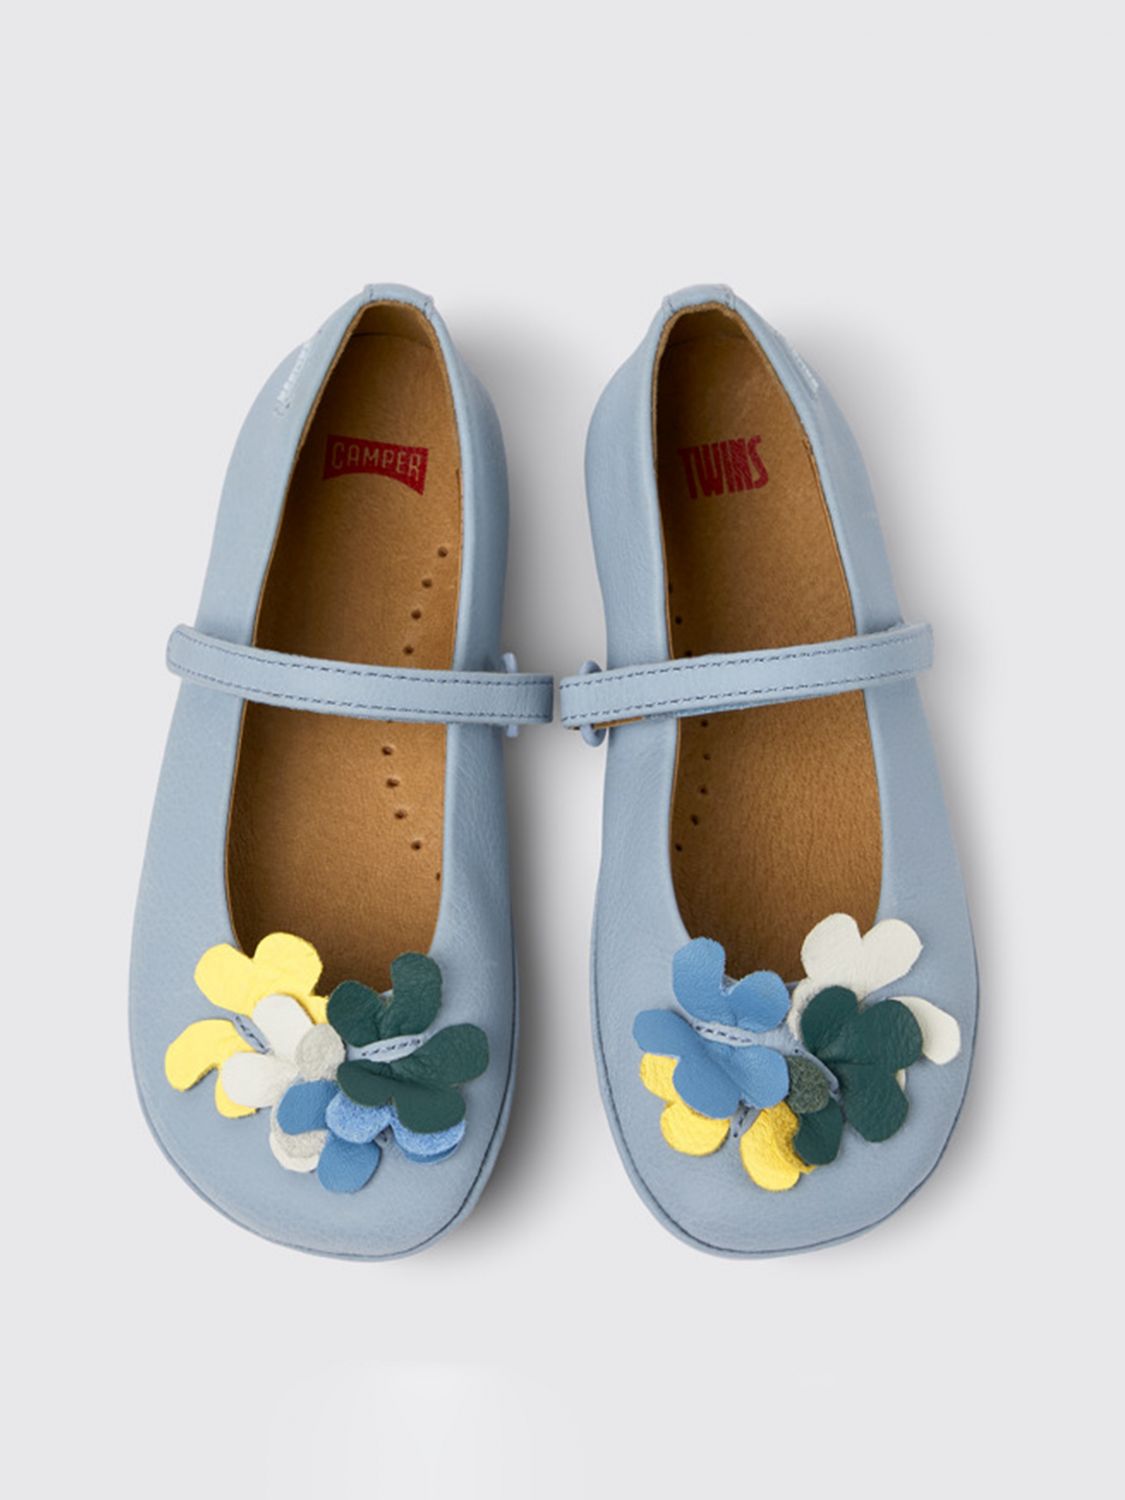 CAMPER: Zapatos niña, Azul Oscuro | Camper K800539-002 TWINS en línea en GIGLIO.COM